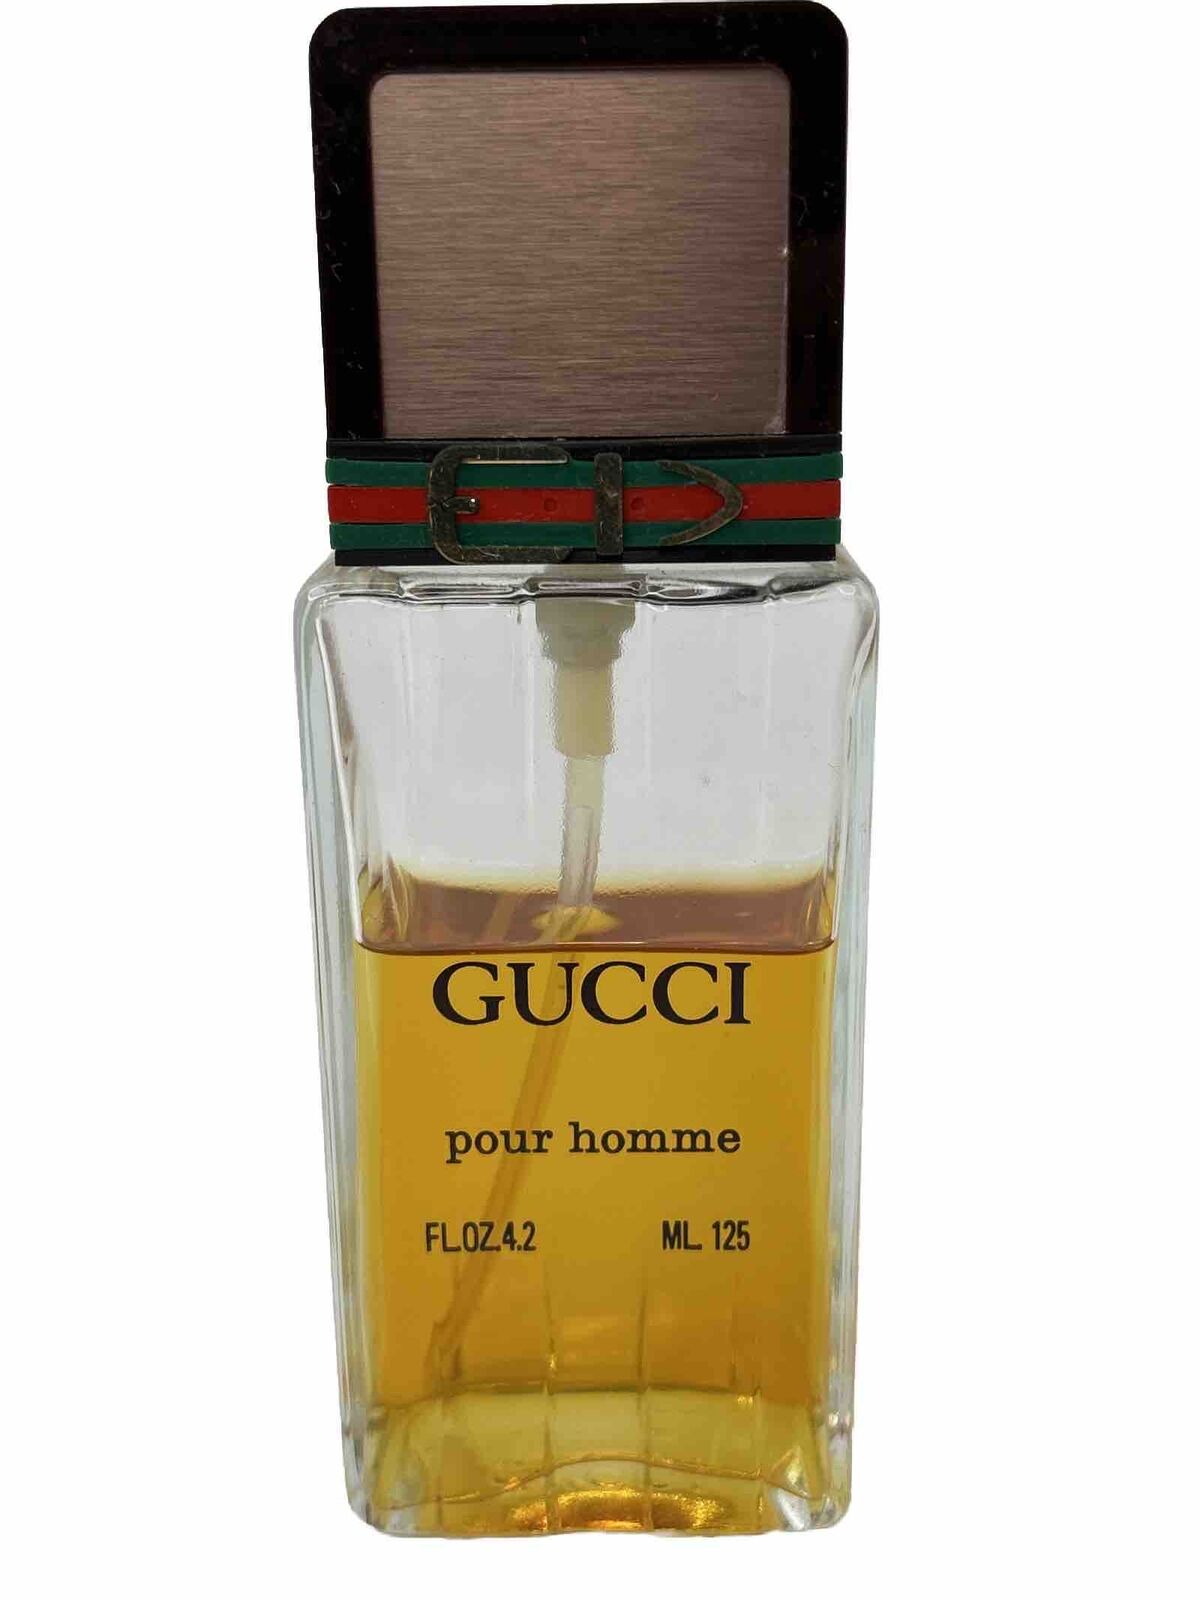 Gucci Pour Homme Cologne Spray 125ml 4.2oz Vintage Classic France RARE